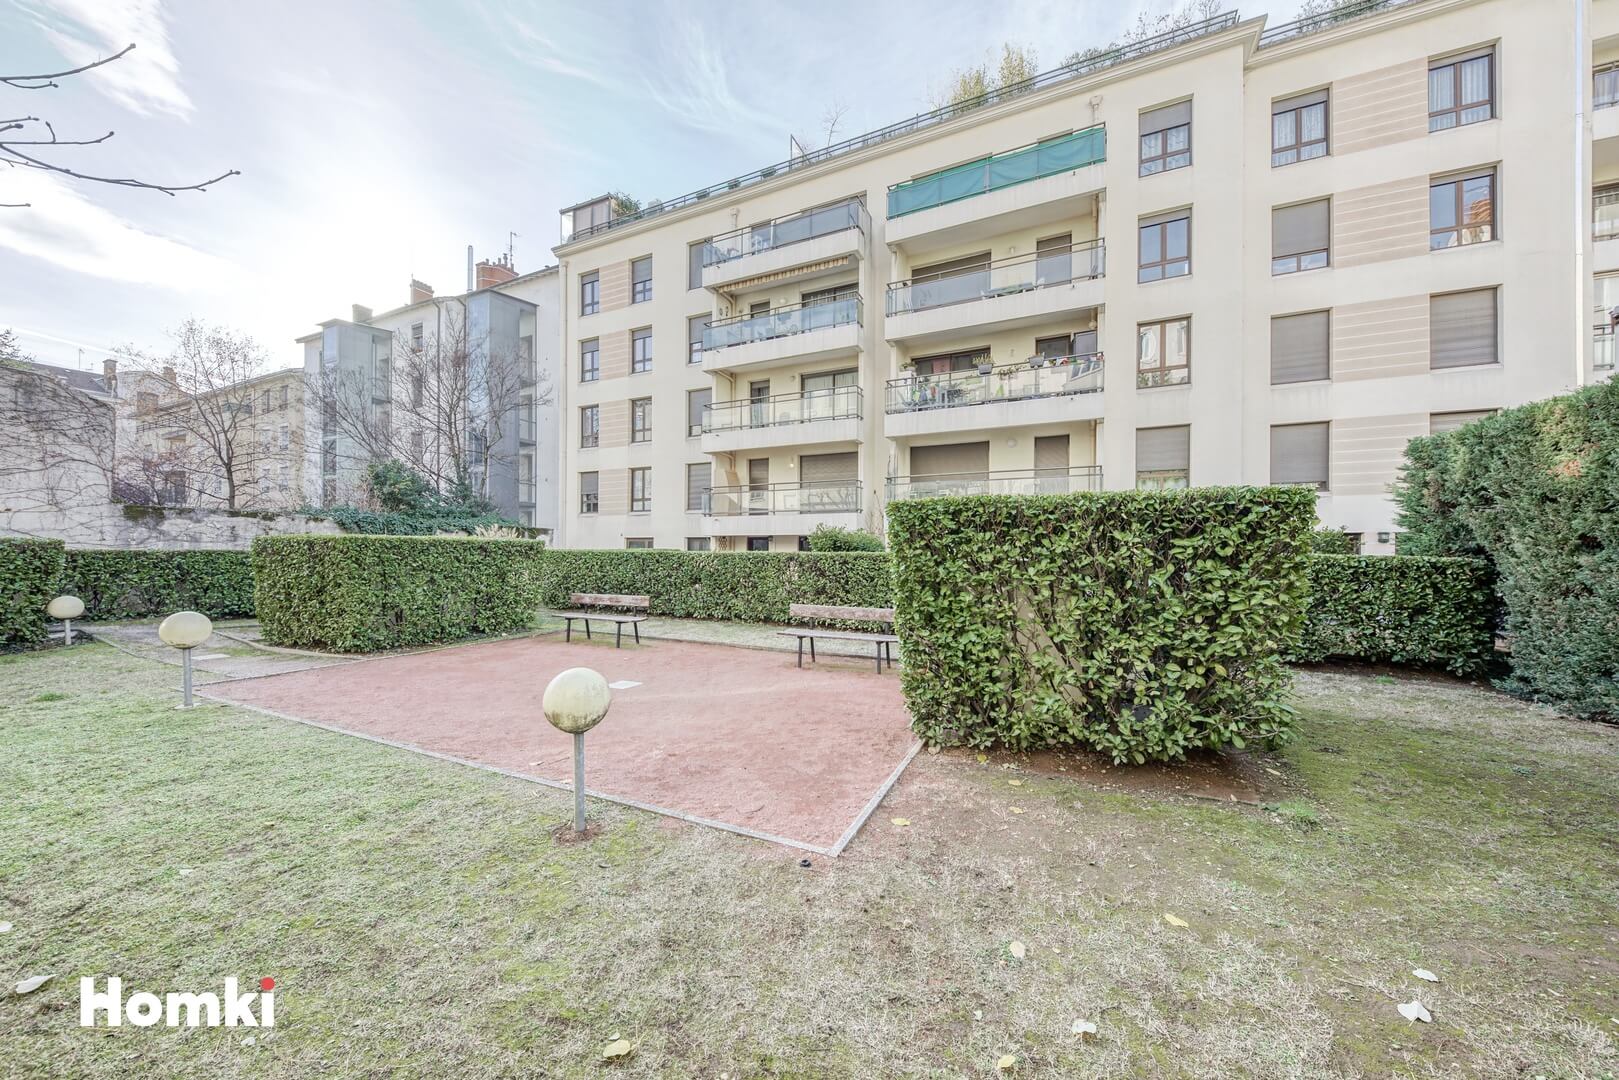 Homki - Vente Appartement  de 69.0 m² à Villeurbanne 69100